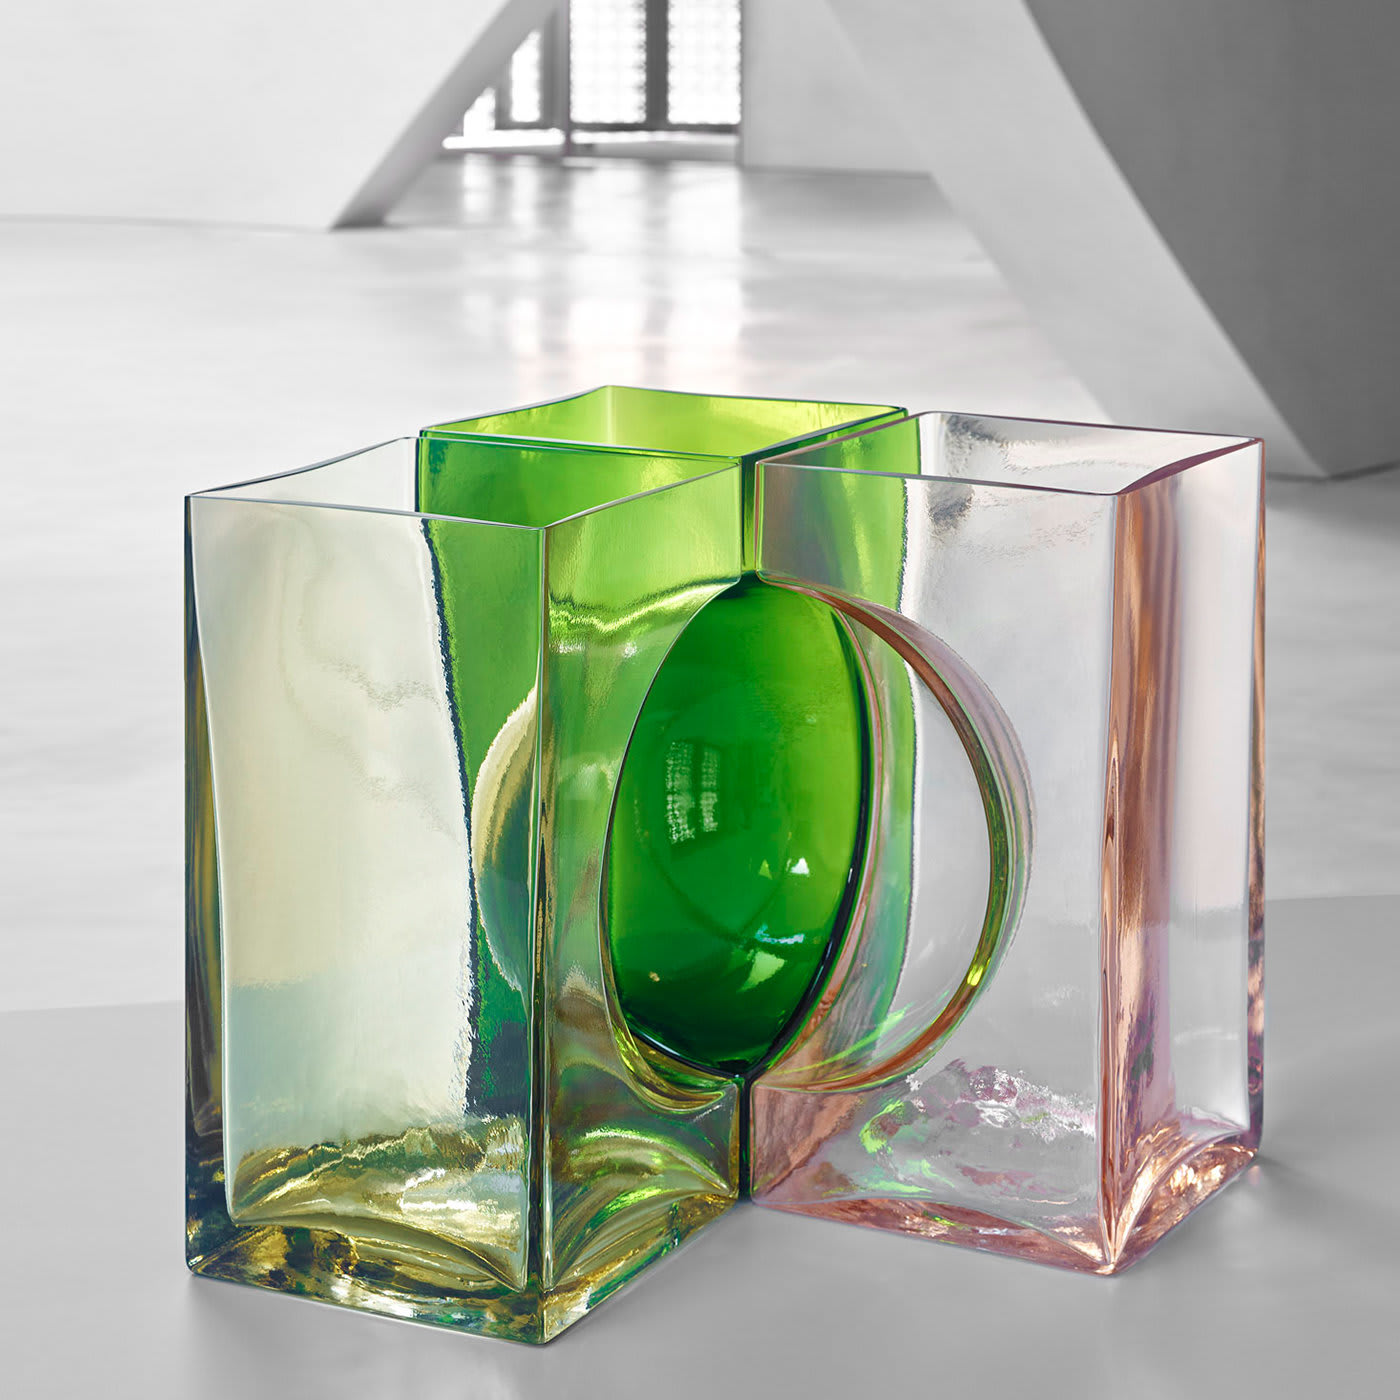 Ando Cosmos Green Crystal Sculpture by Tadao Ando - Venini